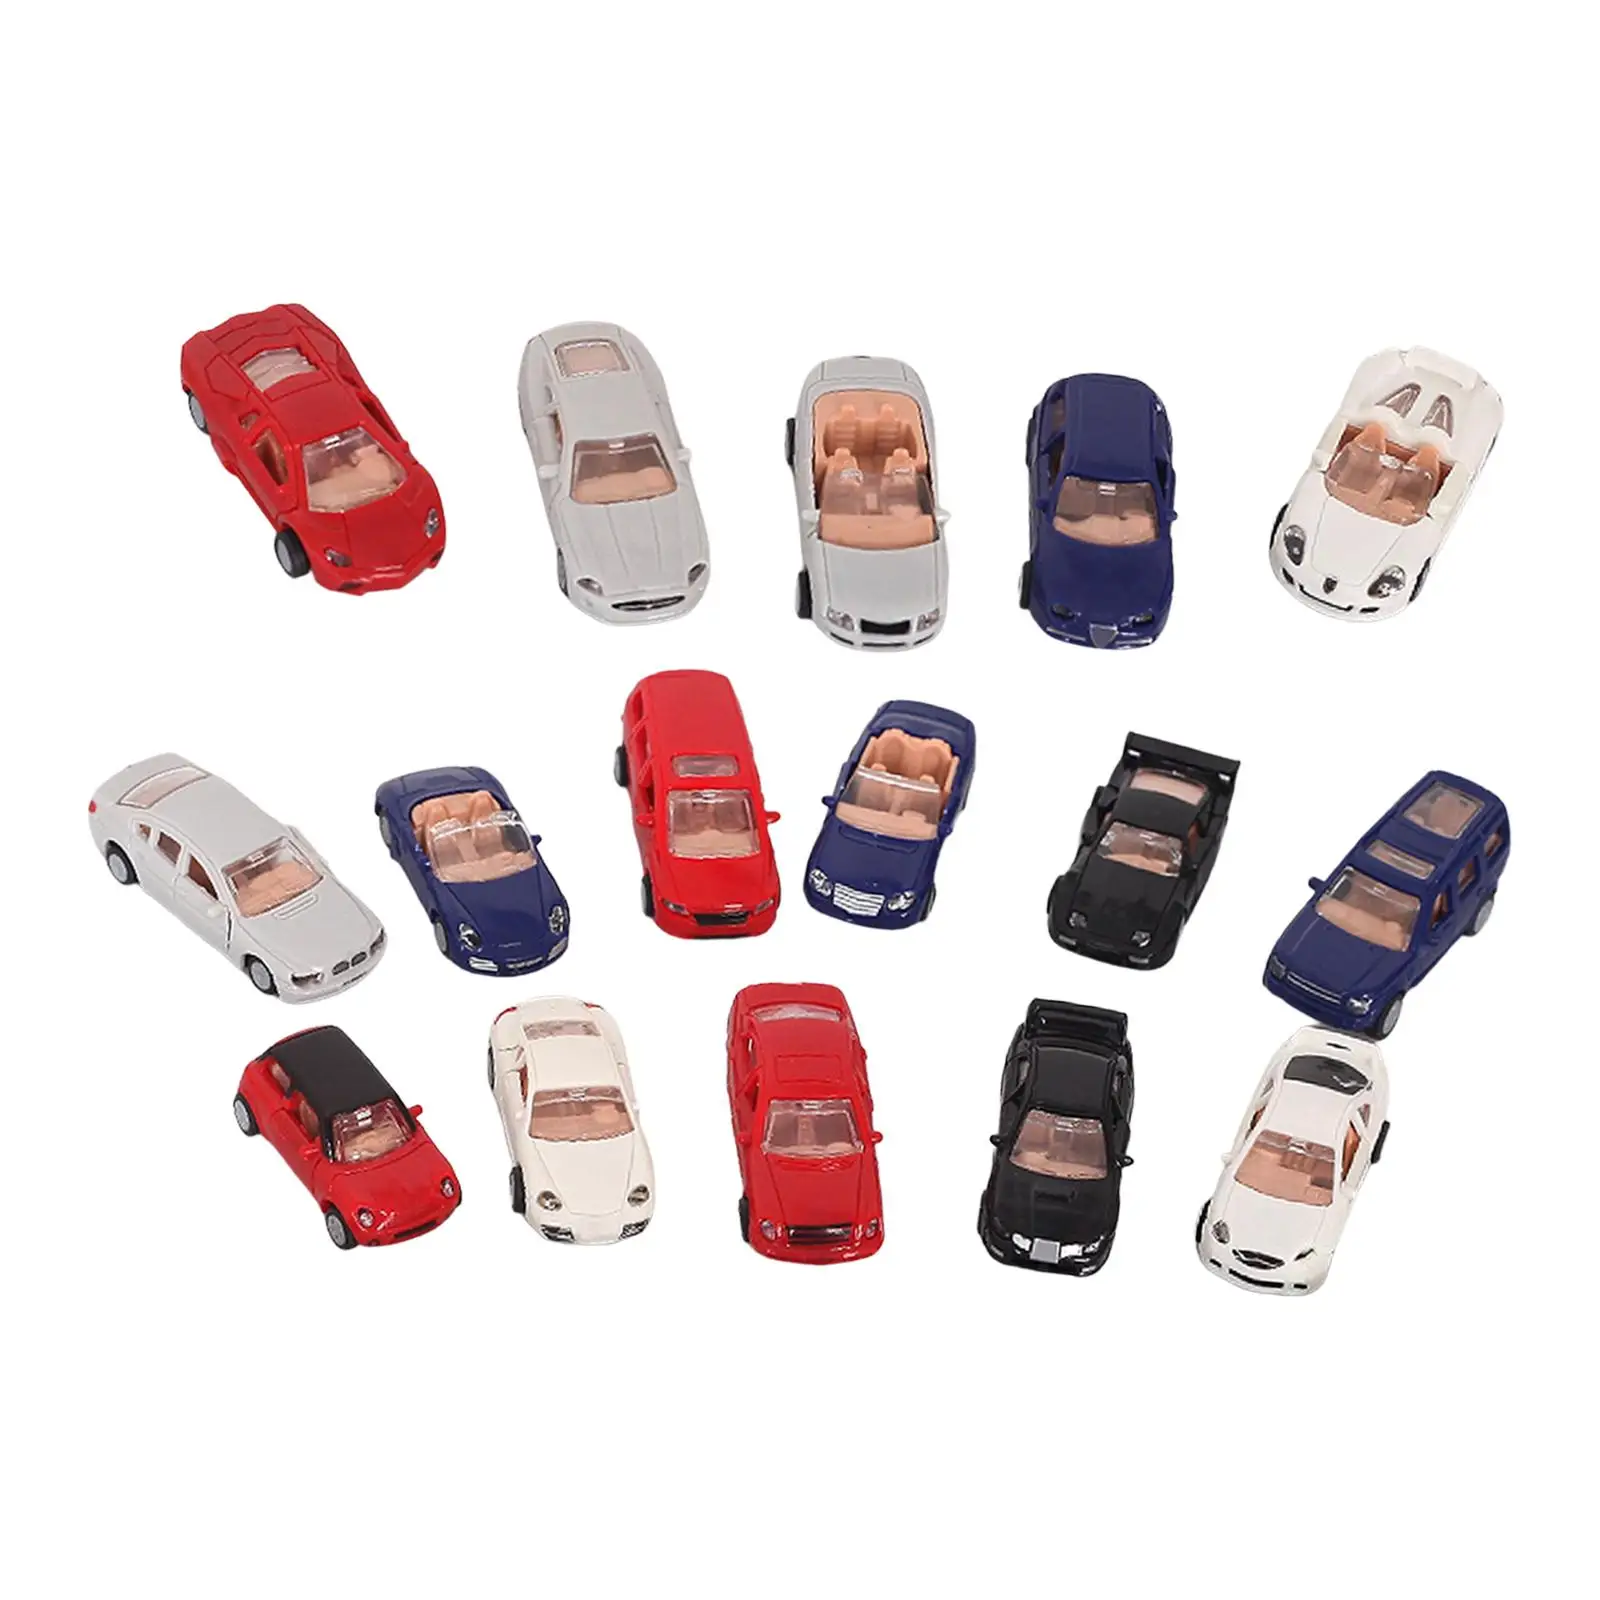 16x Assemble Car Micro Landscape Children Toy Puzzle Car Model Collection